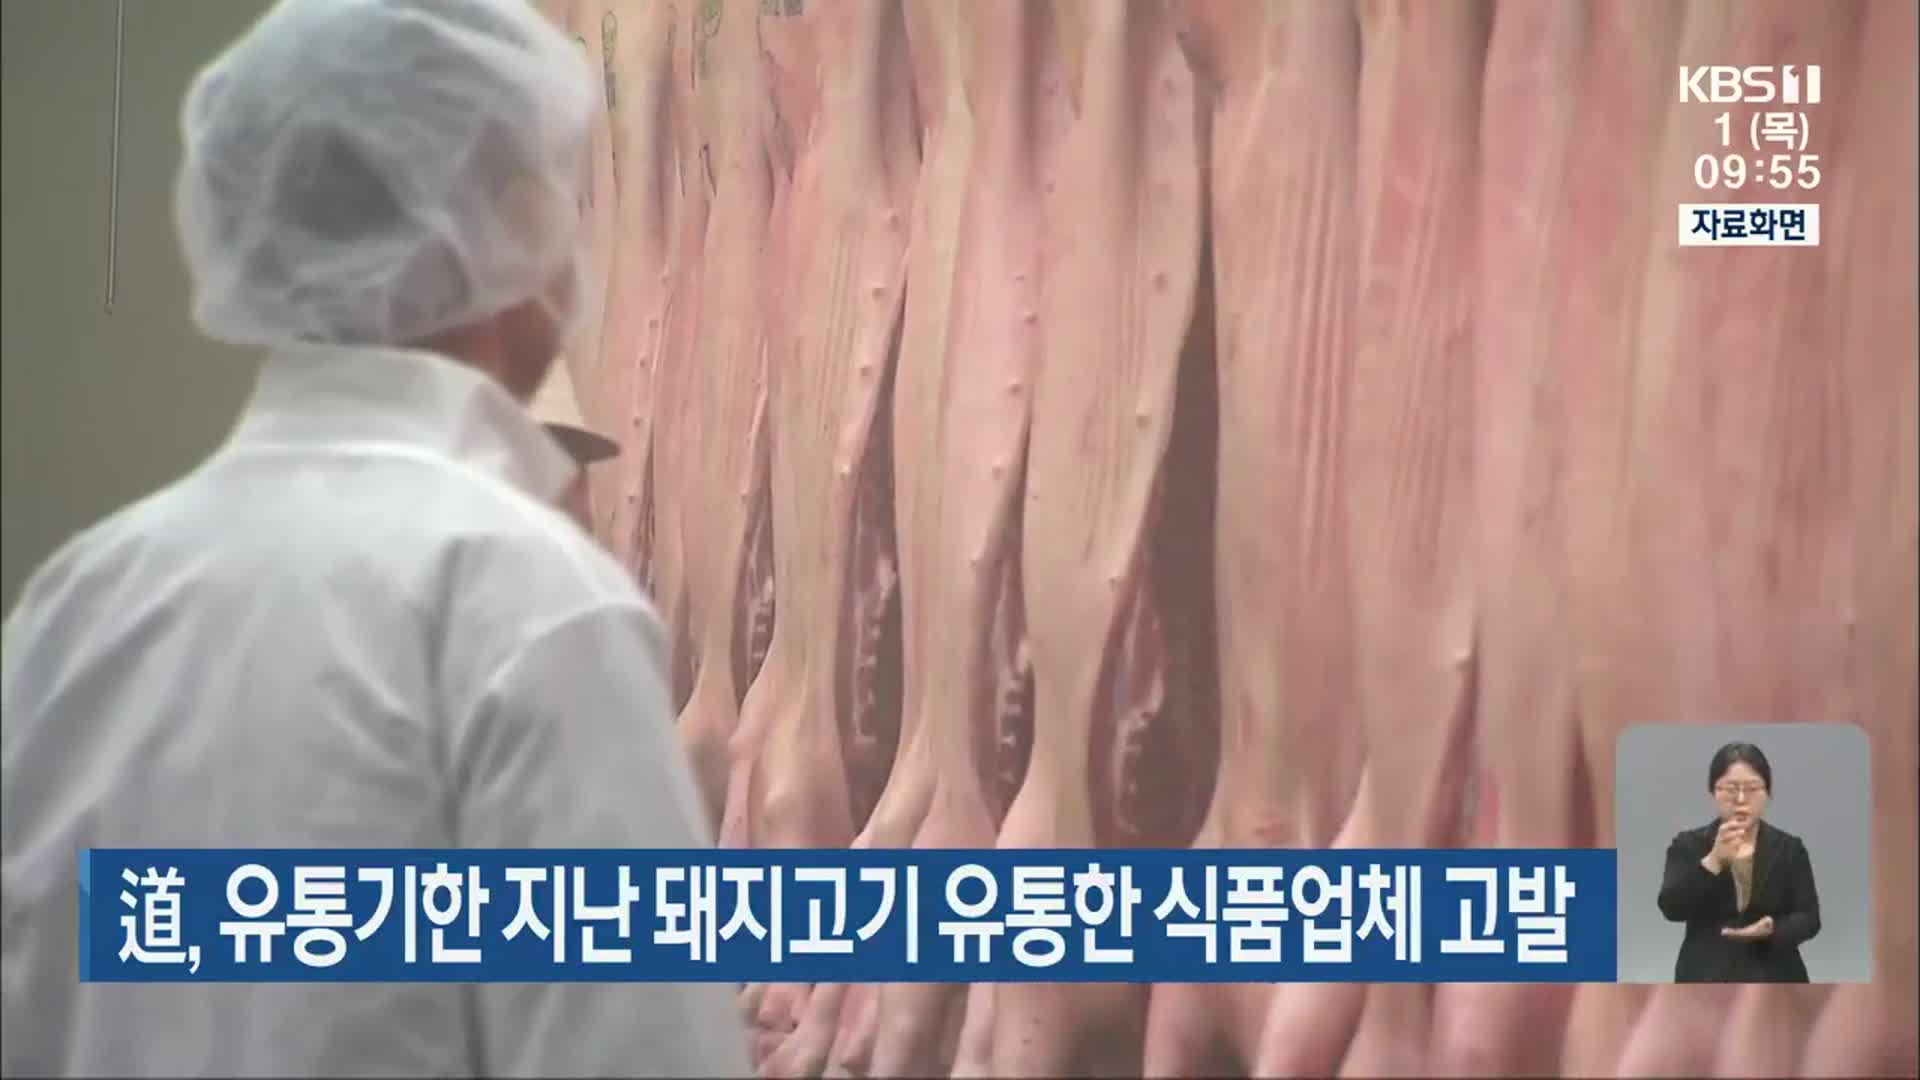 道, 유통기한 지난 돼지고기 유통한 식품업체 고발